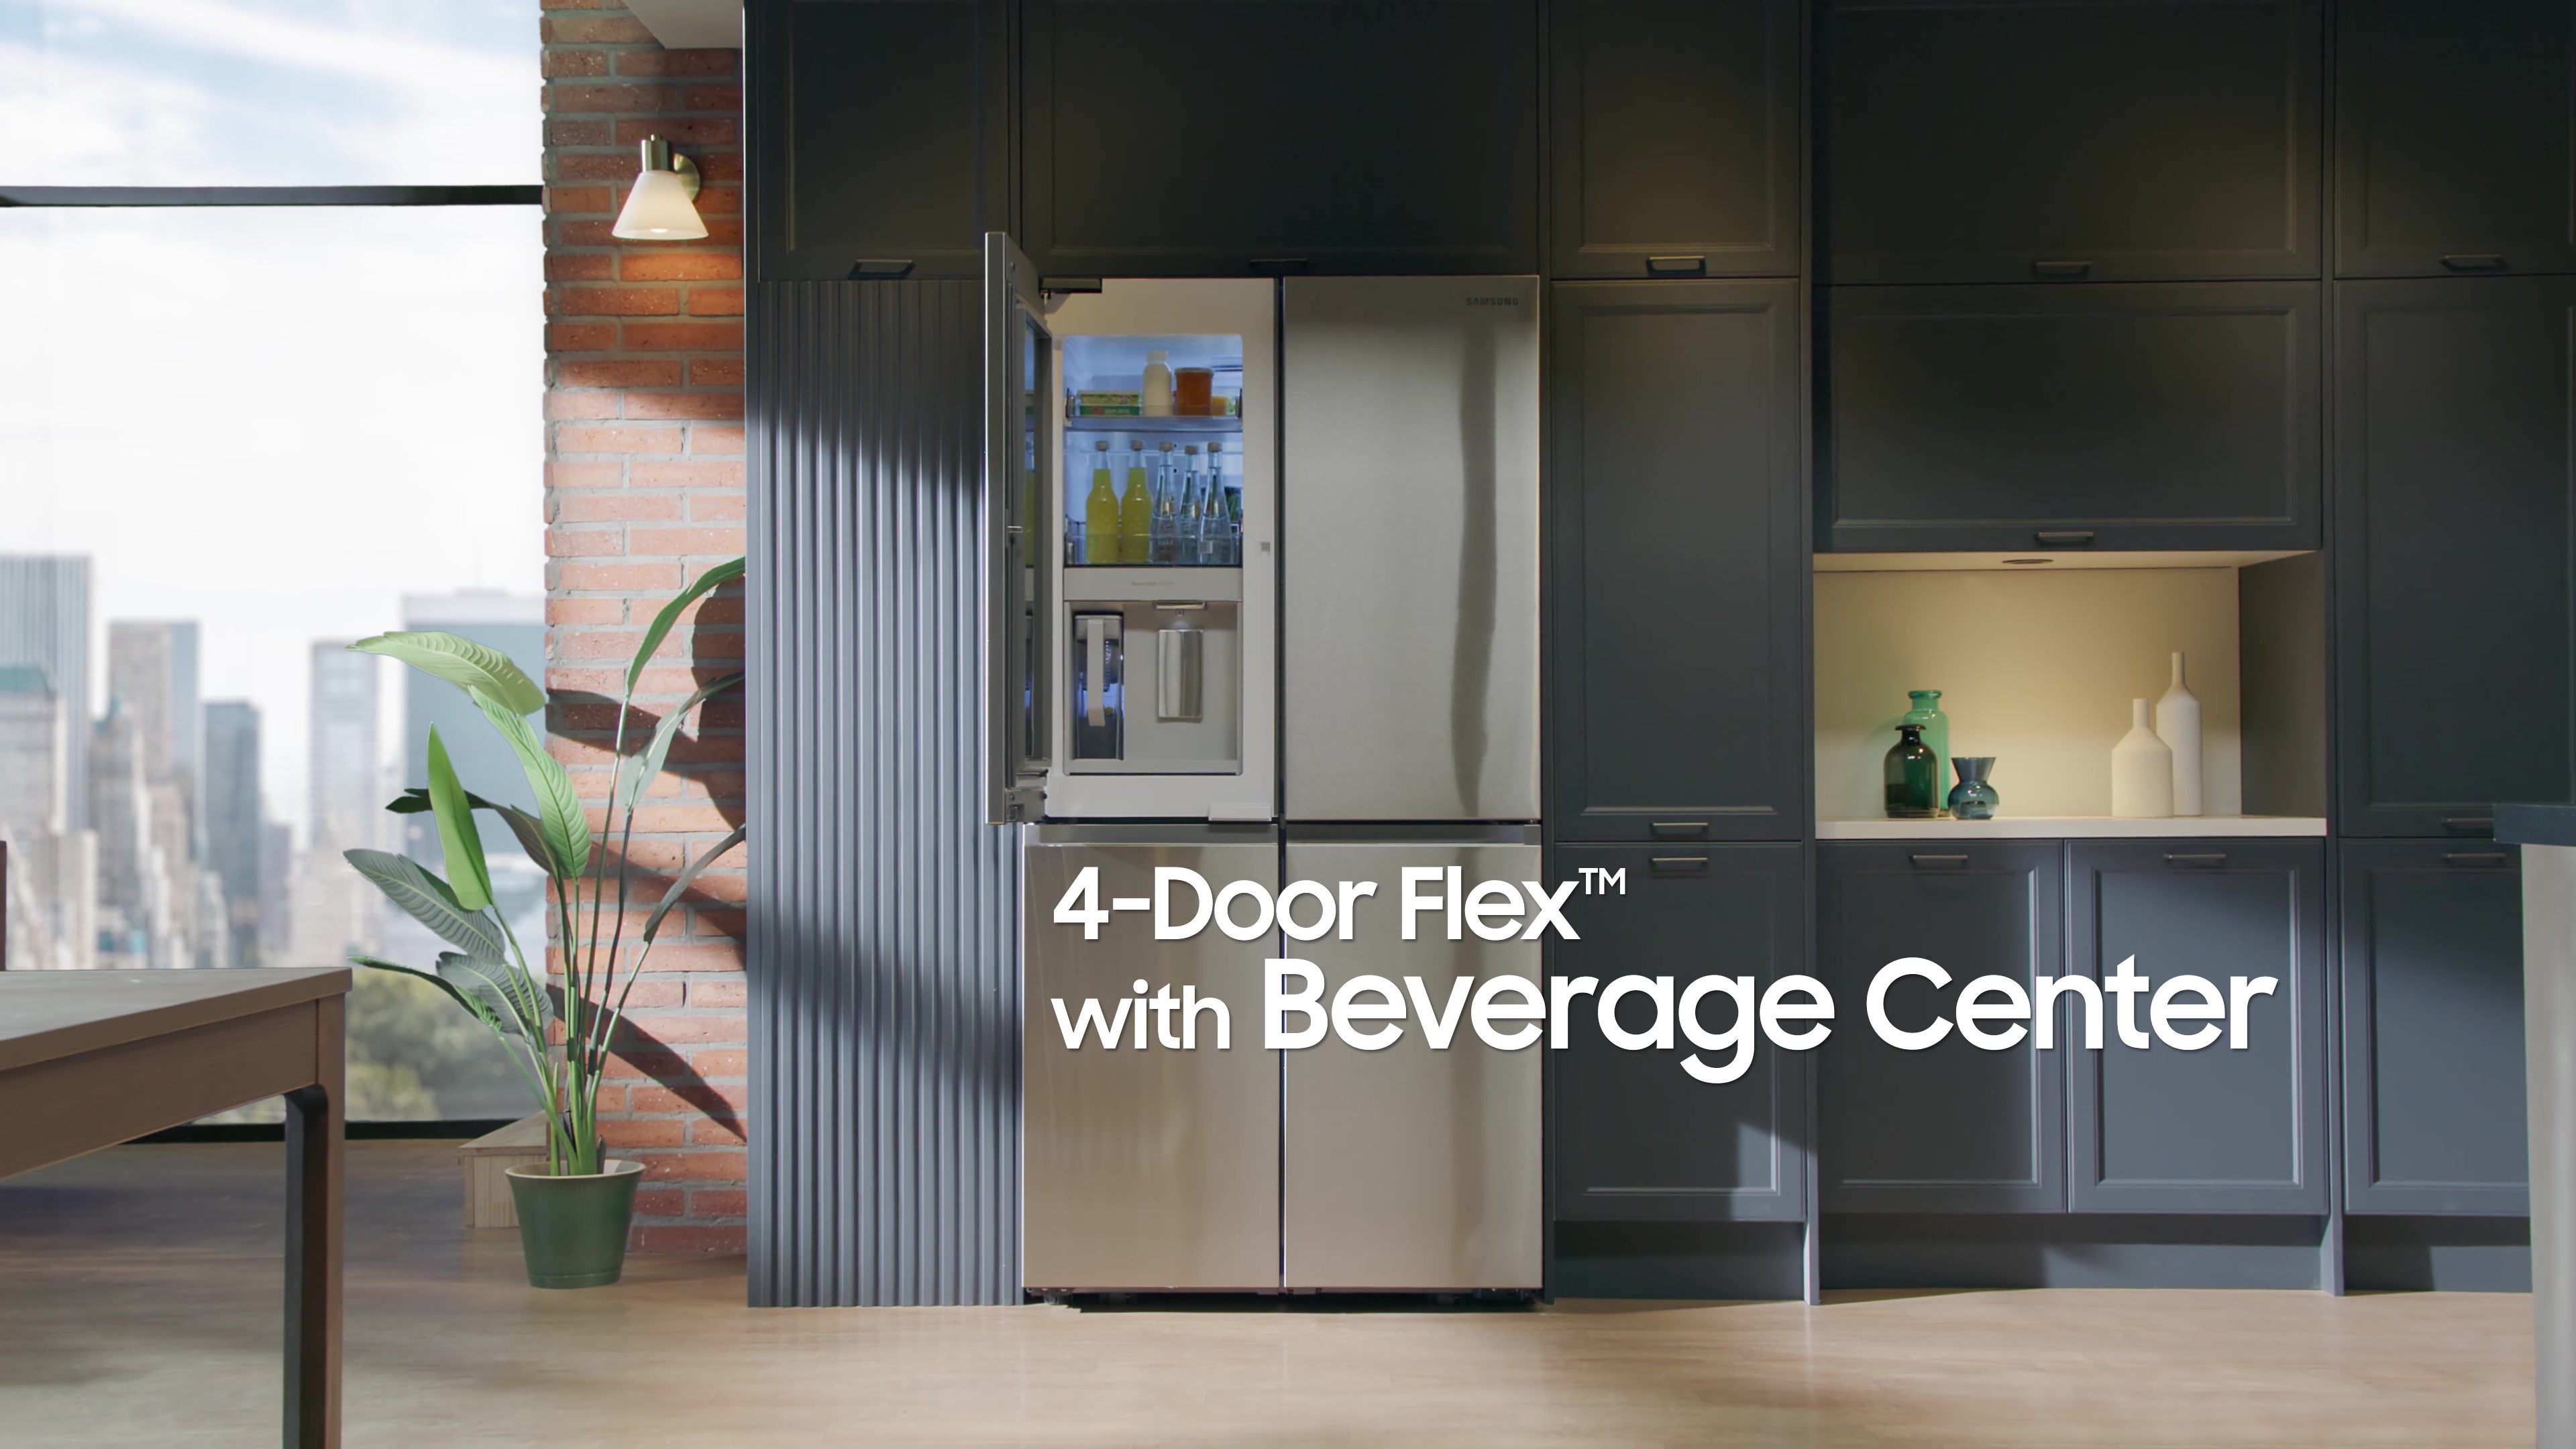 Samsung - 23 cu. ft. 4-Door Flex French Door Counter-Depth Refrigerator with WiFi, AutoFill Water Pitcher & Dual Ice Maker - Fingerprint Resistant